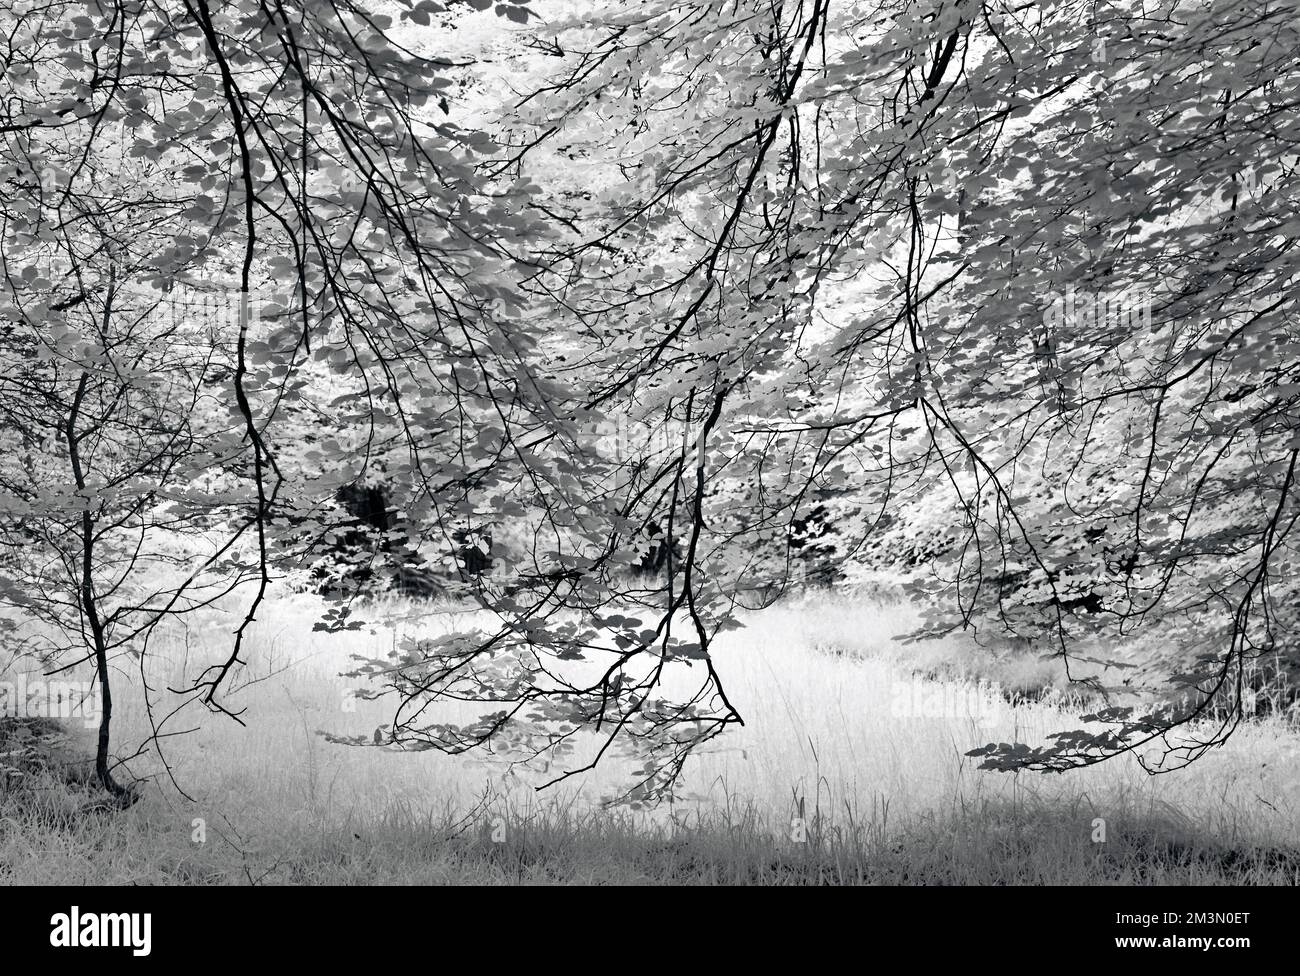 Fotografia in bianco e nero dei rami pendolari dell'albero di faggio sulla zona AONB di Cannock Chase di eccezionale bellezza naturale nello Staffordshire Inghilterra Foto Stock